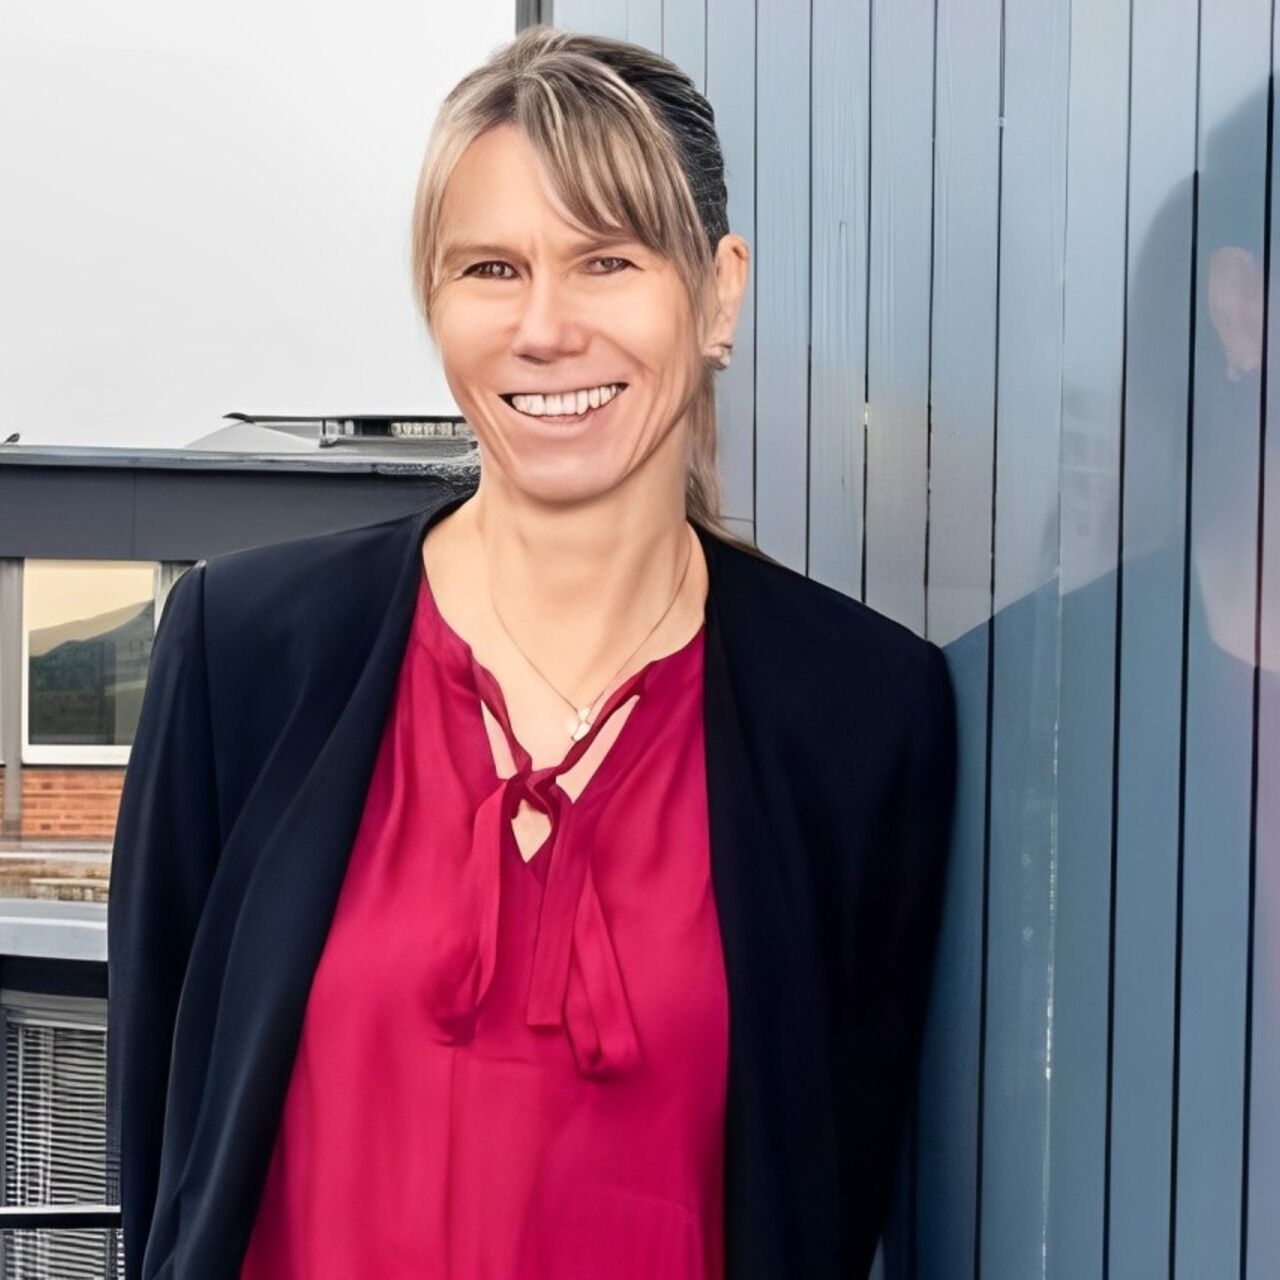 Tanja Zimmermann: intervista alla Direttrice dell’EMPA sul progetto svizzero “Mining the Atmosphere” in collaborazione con l’EAWAG